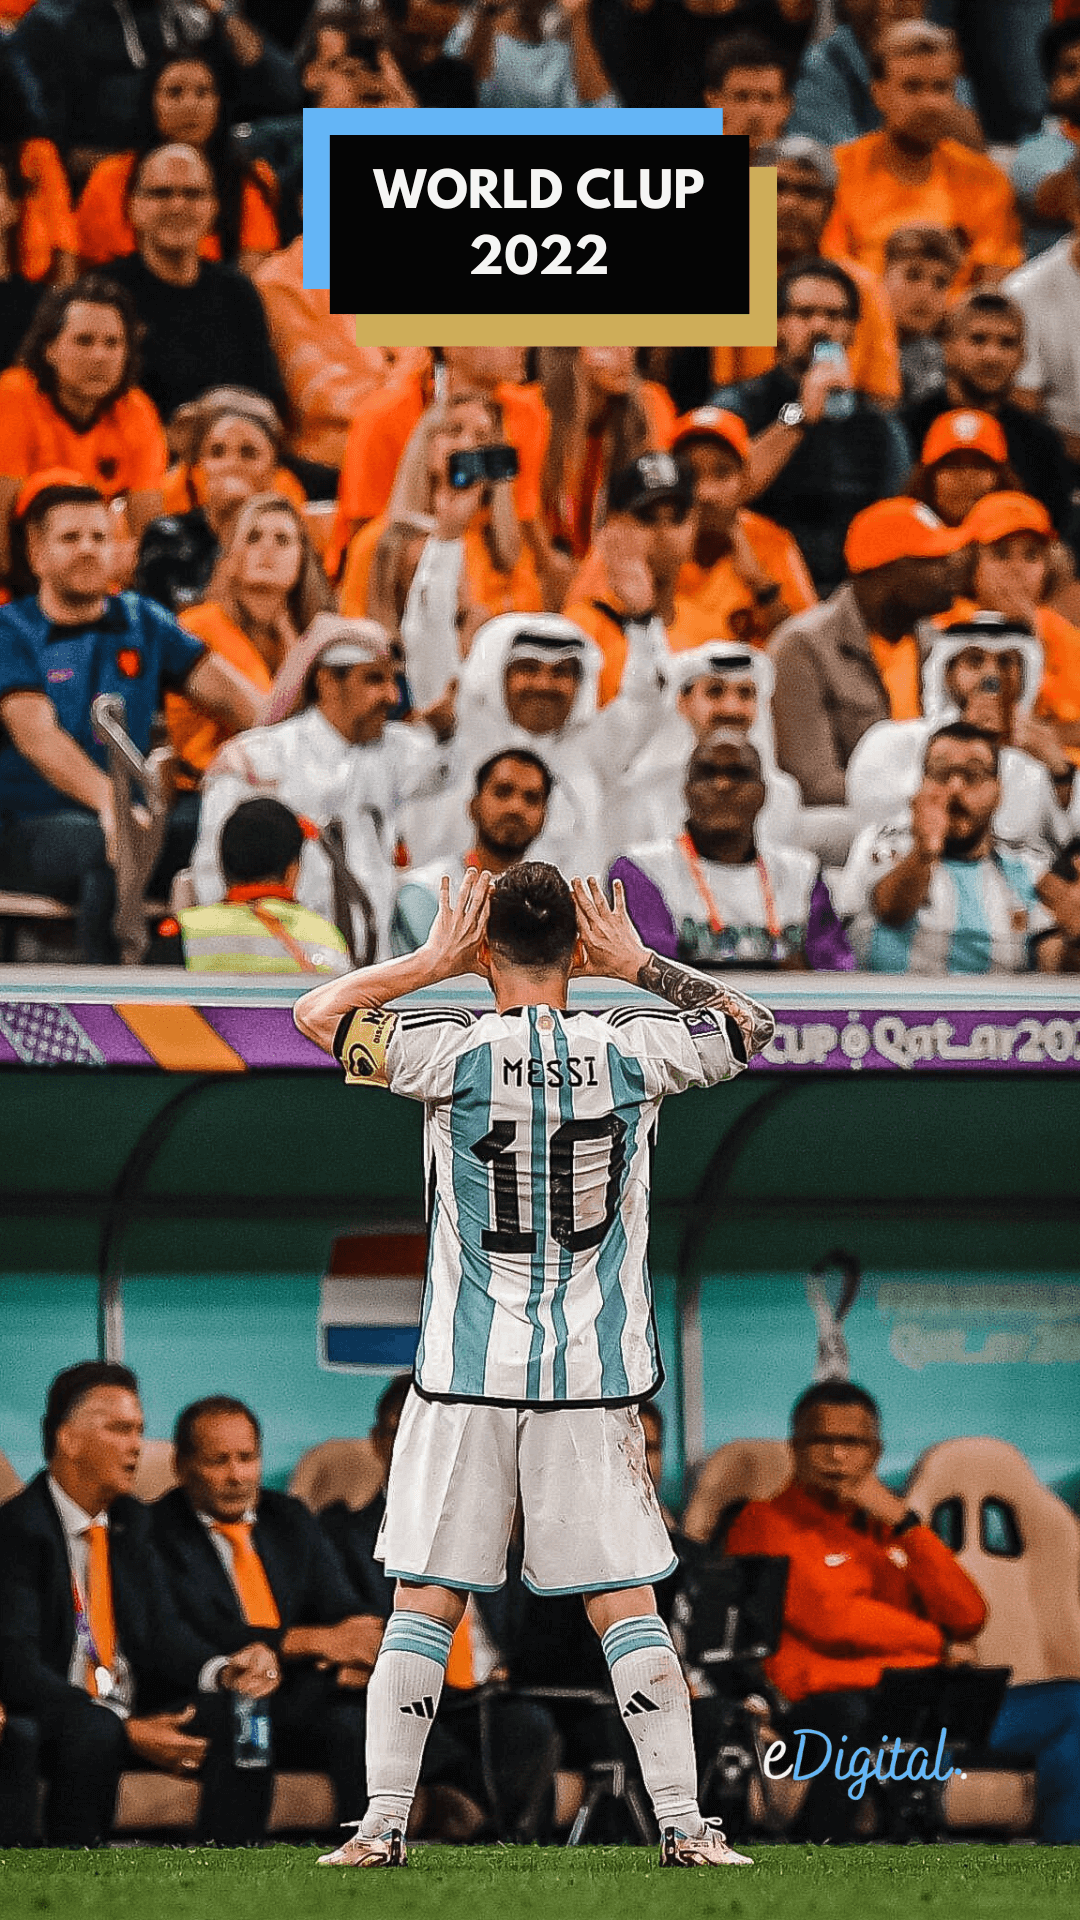 Bộ sưu tập Messi Worldcup Wallpapers đầy sắc màu và ấn tượng. Mỗi hình nền là sự kết hợp độc đáo giữa Lionel Messi và World Cup. Thưởng thức hình ảnh liên quan để cảm nhận sự mềm mại của ông vua bóng đá!